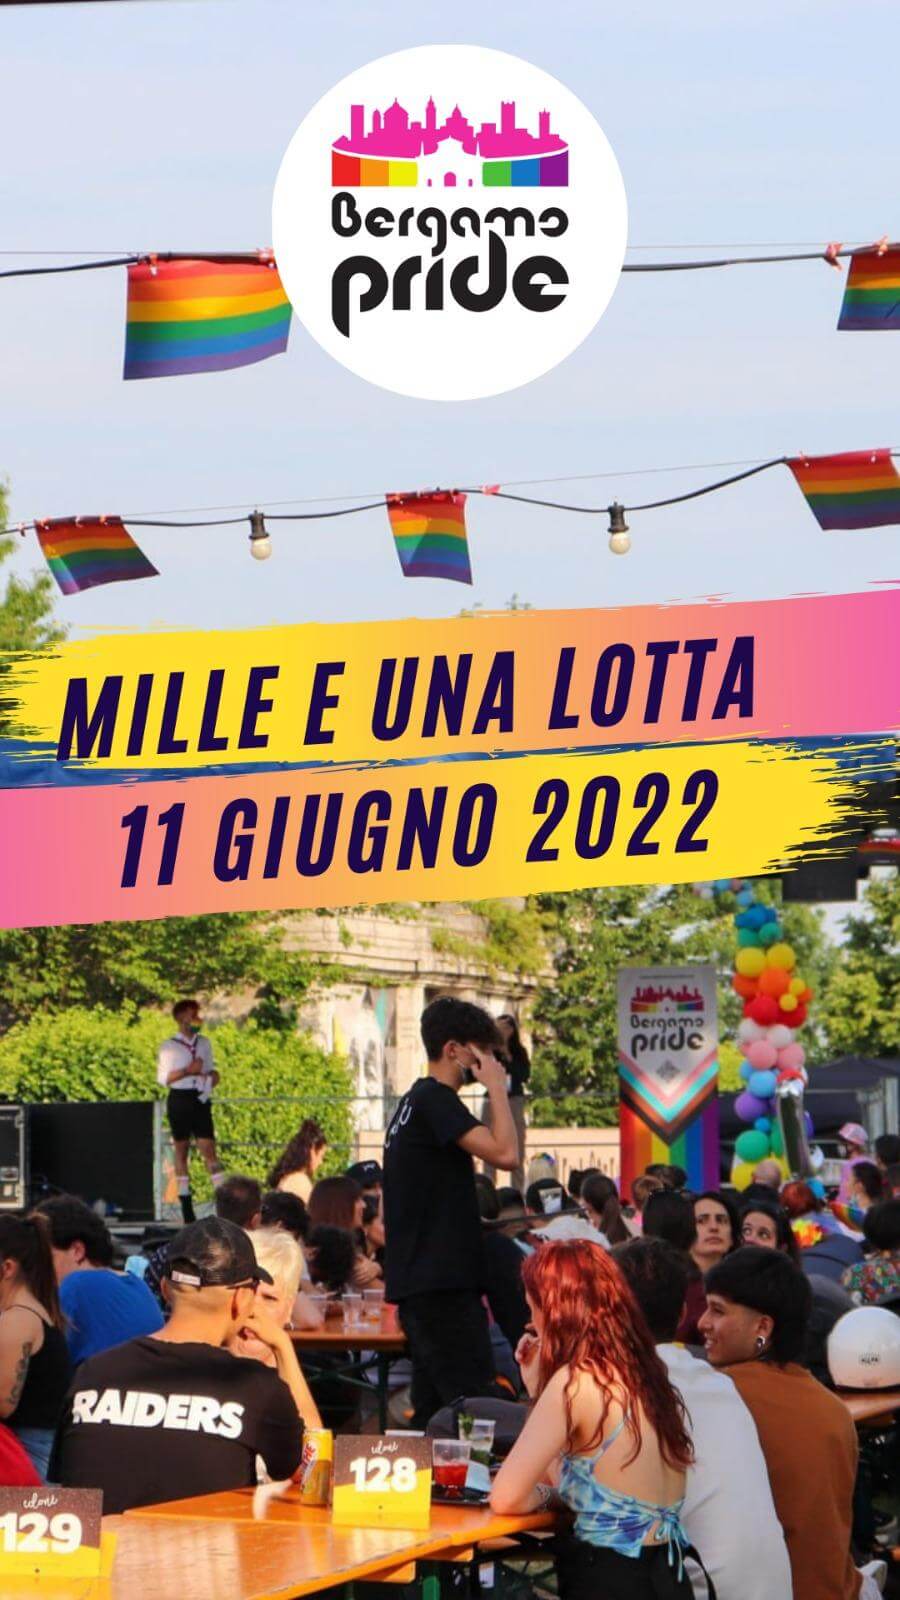 Bergamo Pride 2022 l'11 giugno al grido "Mille e una lotta" - Bergamo Pride 2022 - Gay.it